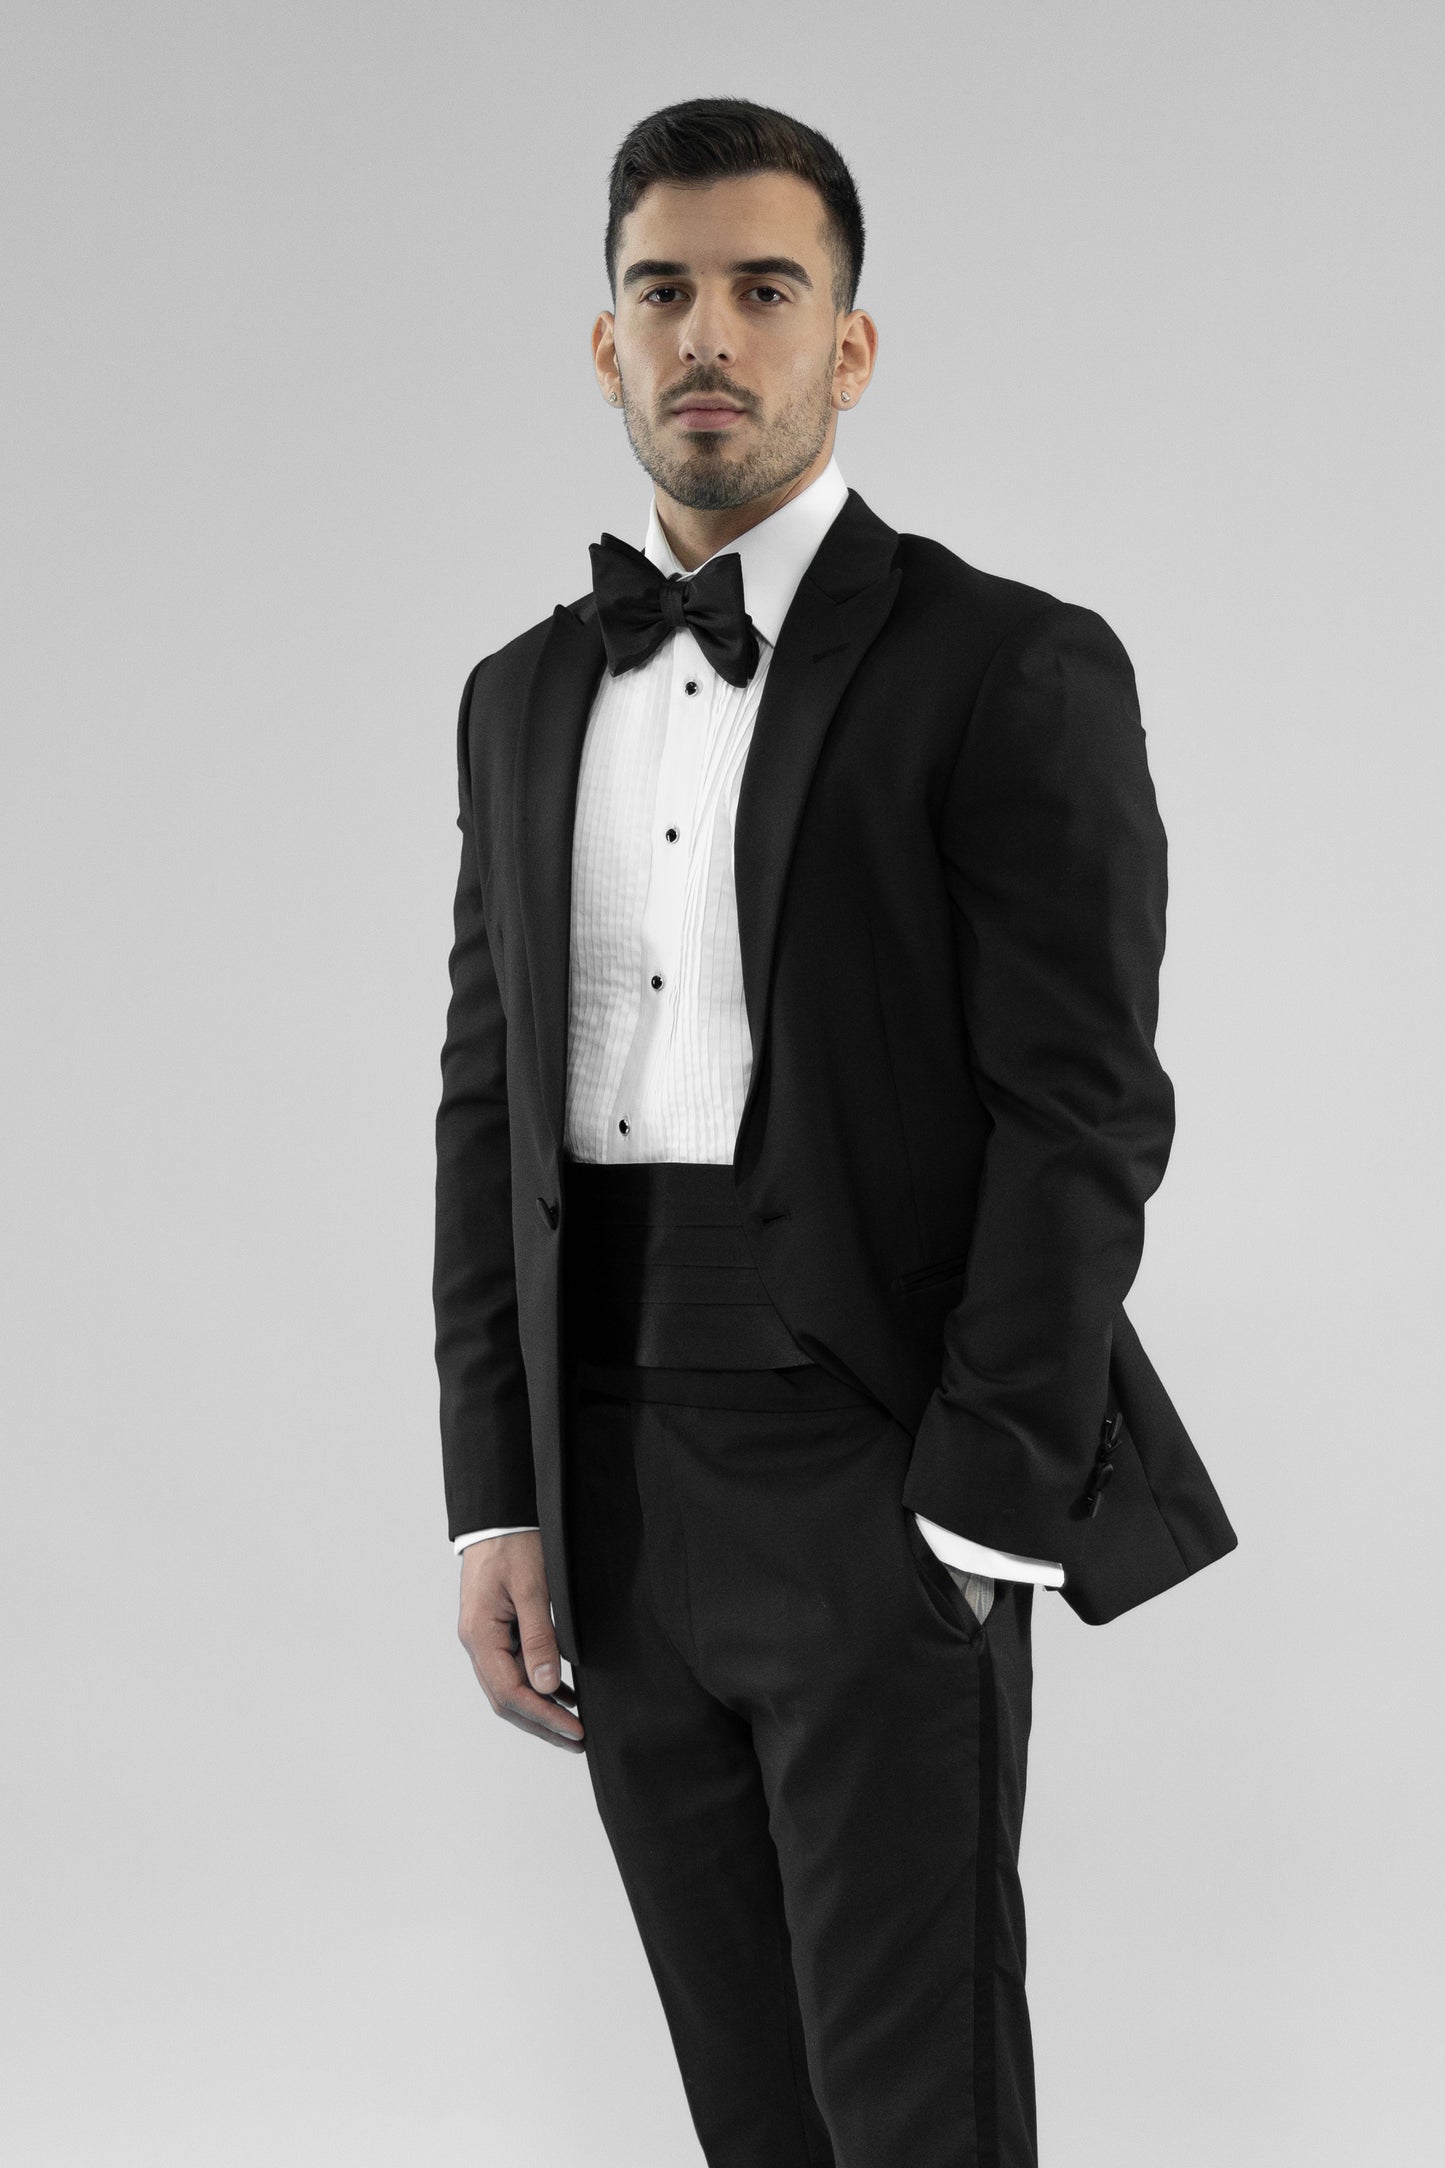 Buy black tuxedo with bow tie